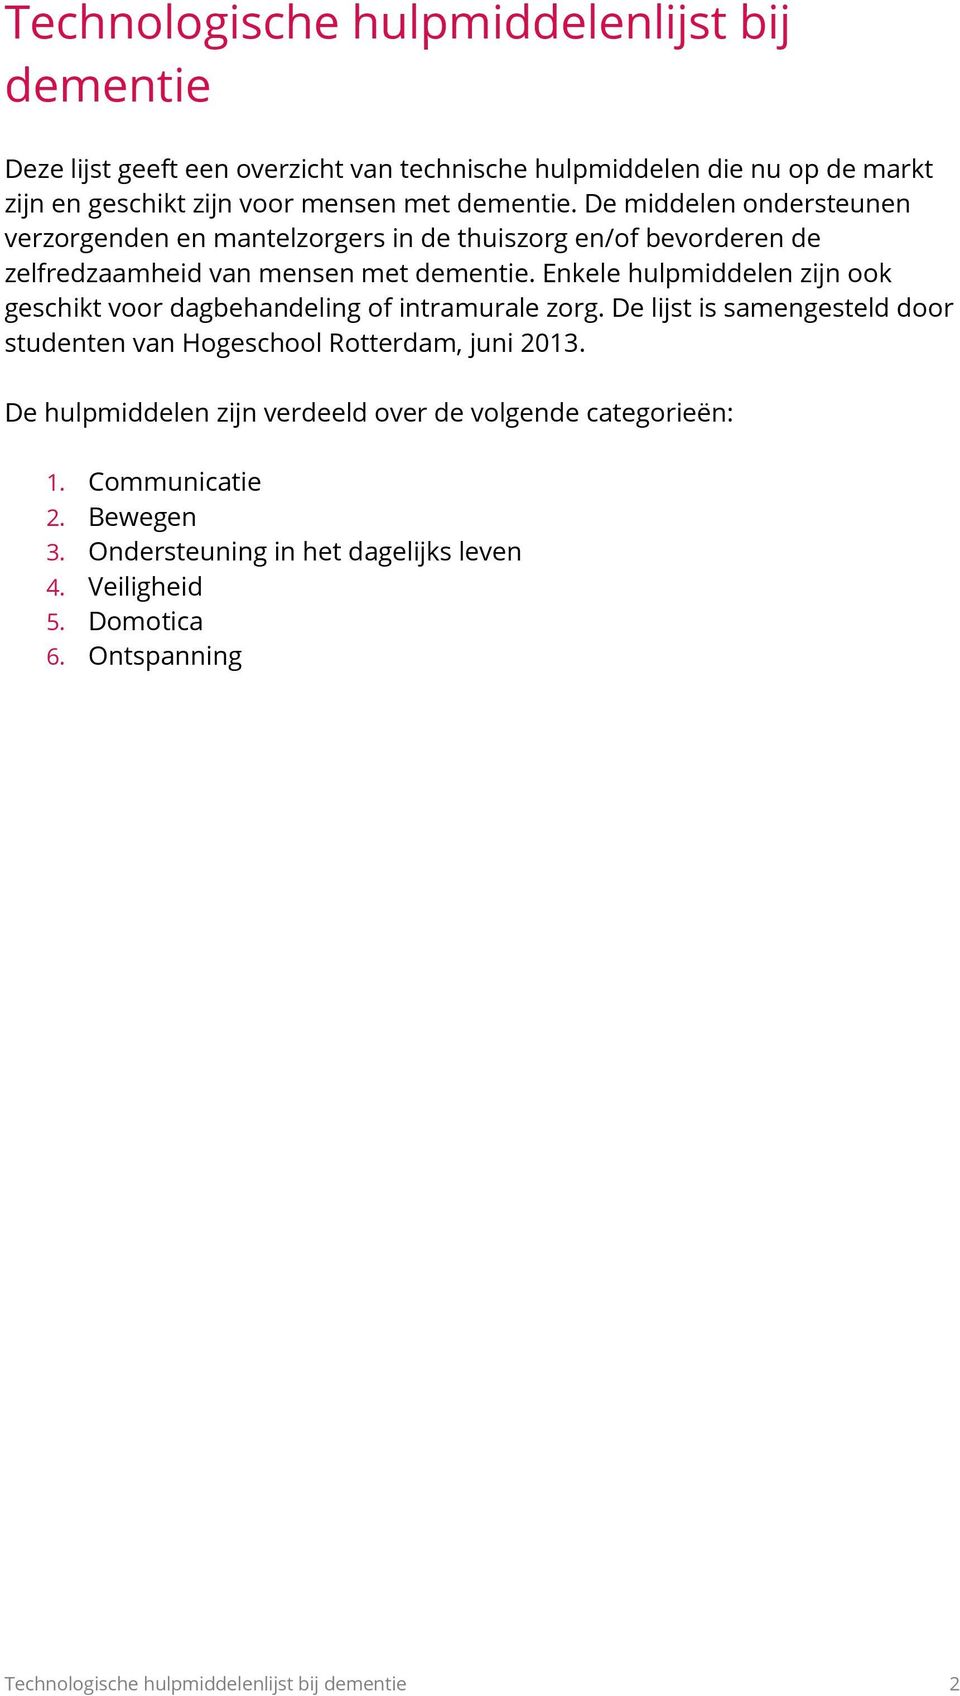 Enkele hulpmiddelen zijn ook geschikt voor dagbehandeling of intramurale zorg. De lijst is samengesteld door studenten van Hogeschool Rotterdam, juni 2013.